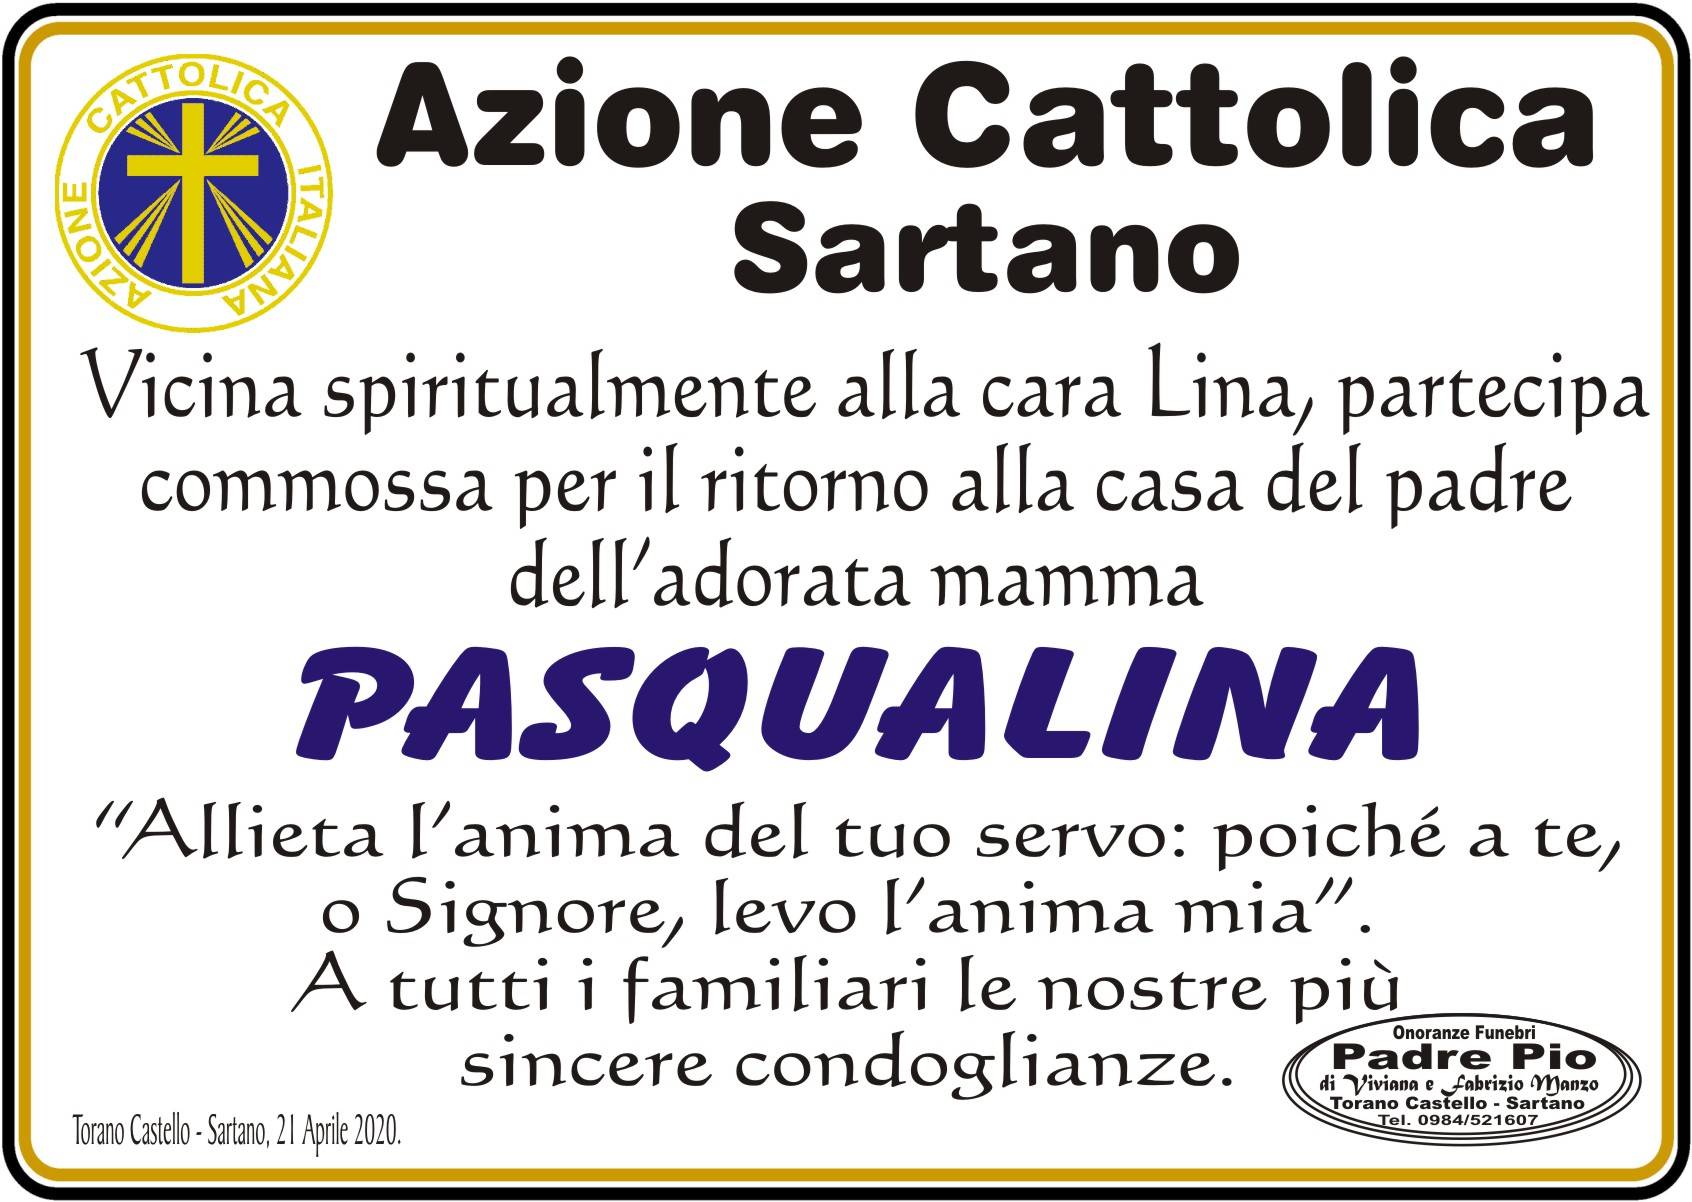 Azione Cattolica Sartano